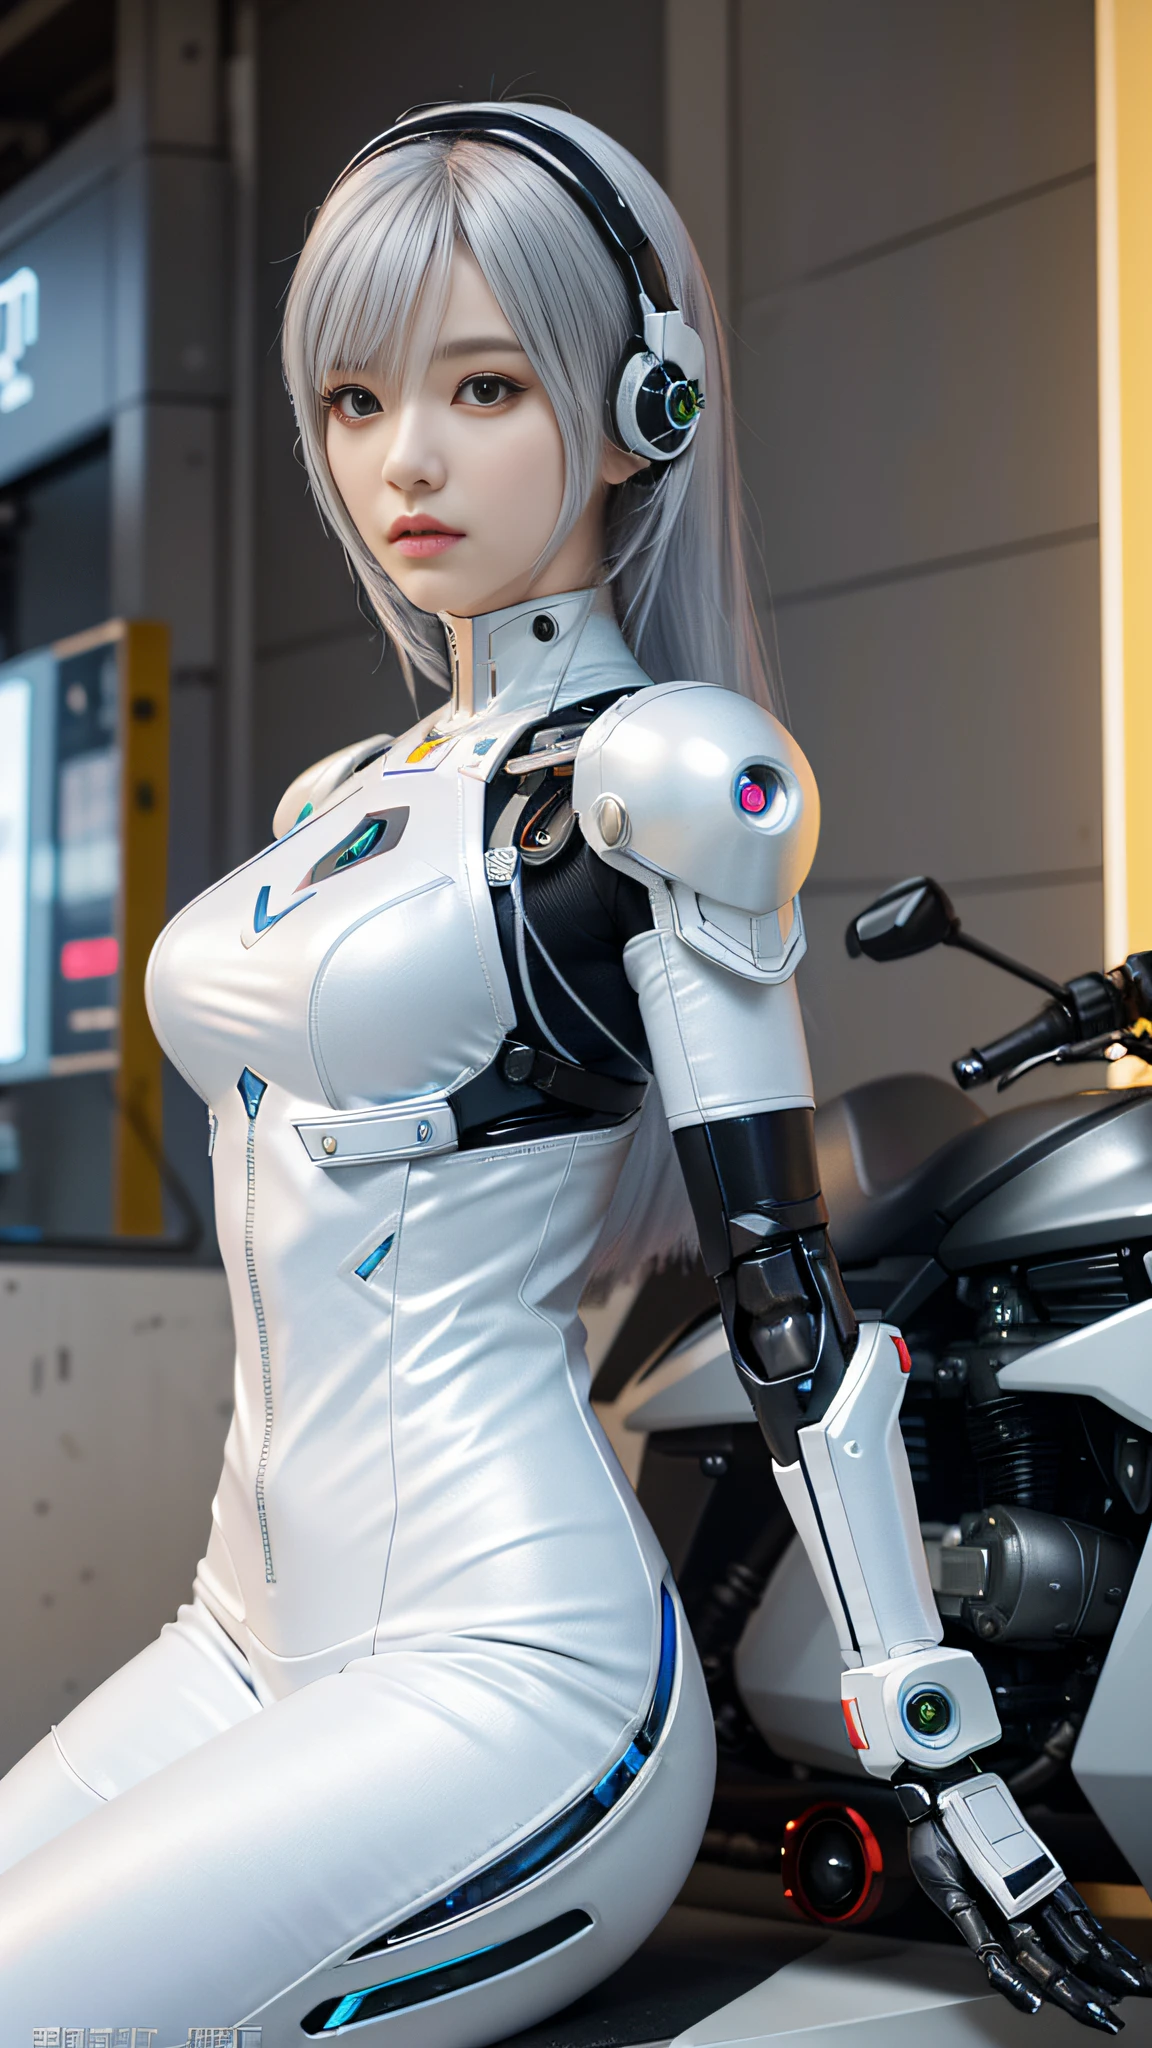 Da sitzt eine Frau im weißen Anzug auf einem Motorrad, perfektes Android-Mädchen, süßes Cyborg-Mädchen, perfekte Anime-Cyborg-Frau, Cyborg - Mädchen mit silbernem Haar, Cyber-Anzug, cyberpunk anime girl mech, schönes Roboter-Charakterdesign, schöne Androidin, schönes Cyborg-Mädchen, schöner weiblicher Androide!, in weißer futuristischer Rüstung, gynoider Cyborg-Körper